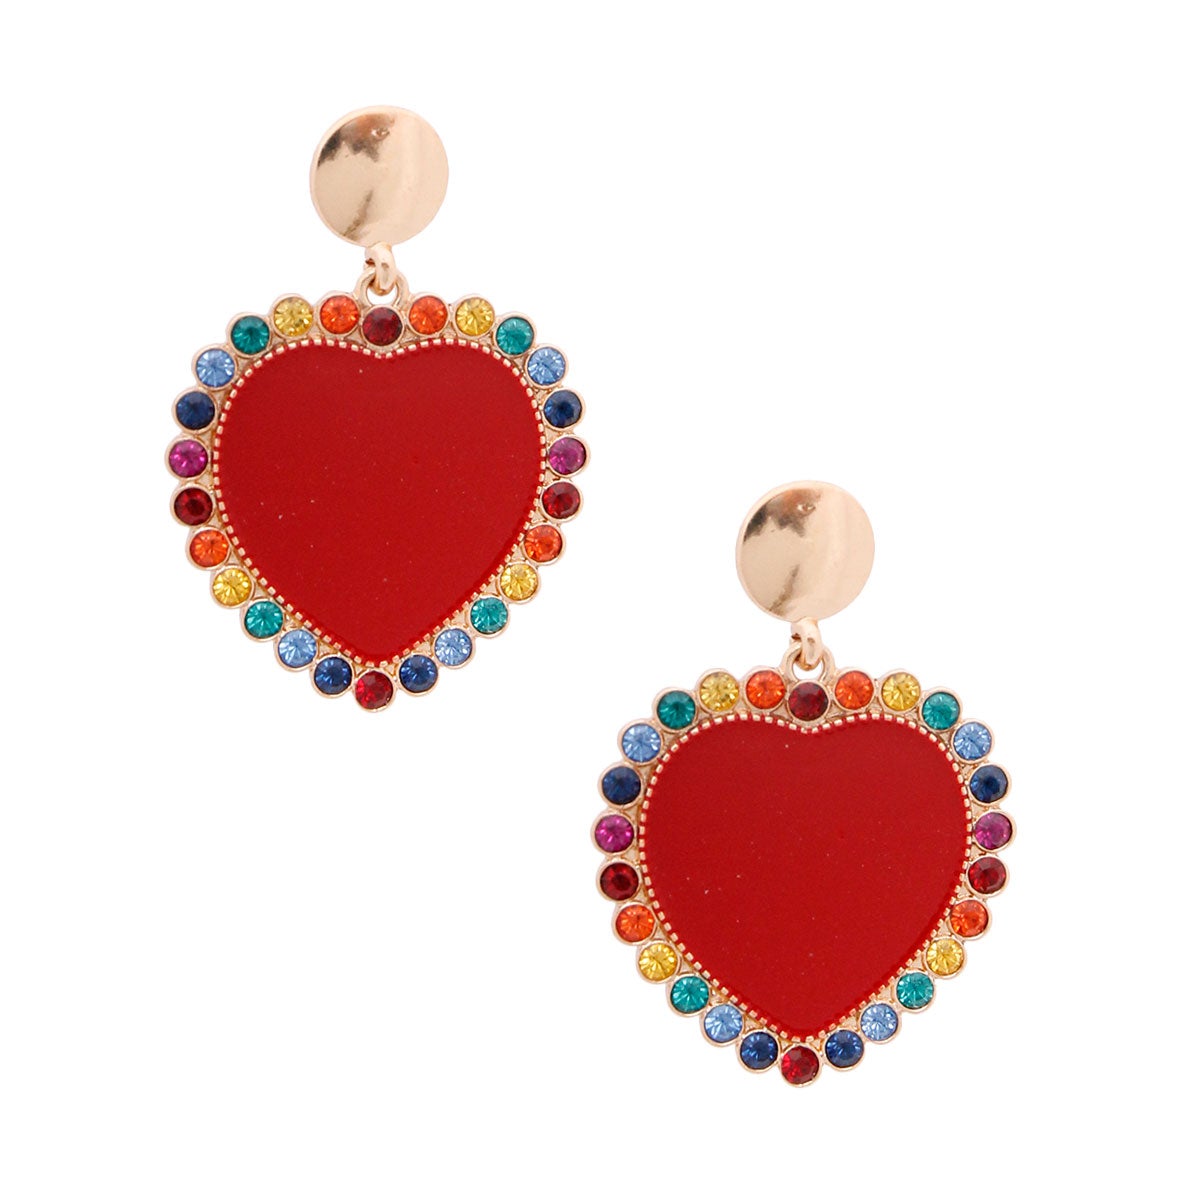 Red Heart and Rhinestone Earrings